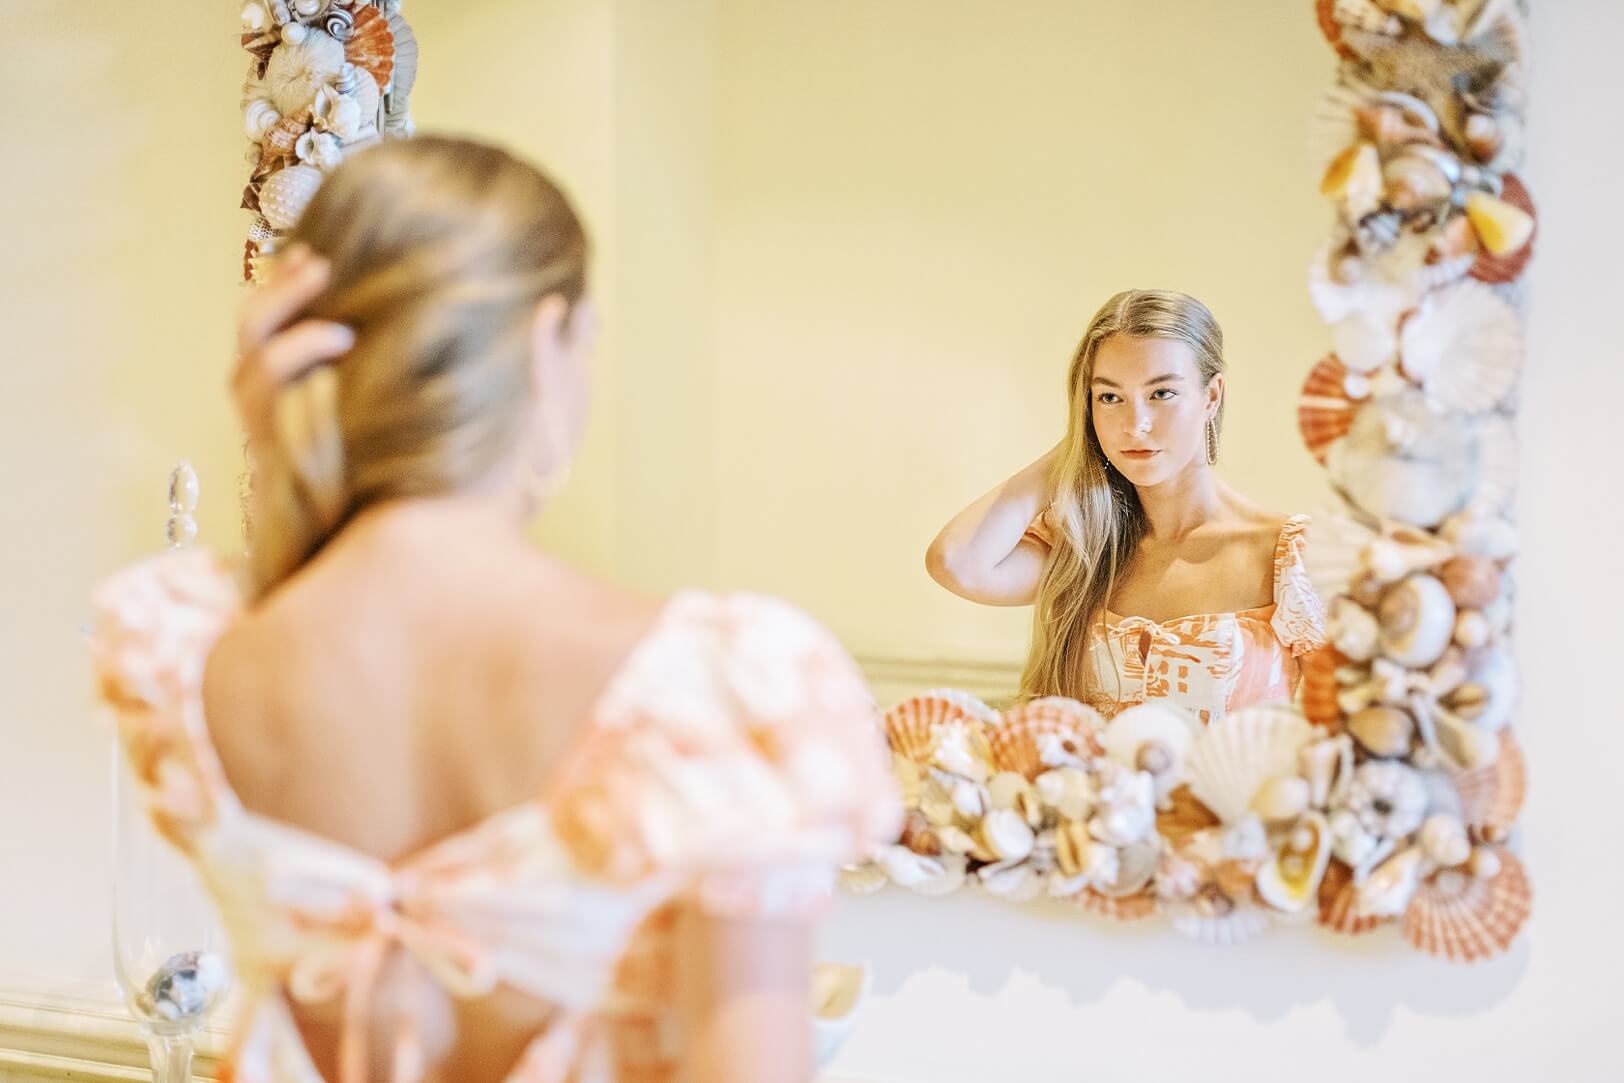 Girl looking in mirror | Charleston Senior Photographer Kaitlin Scott